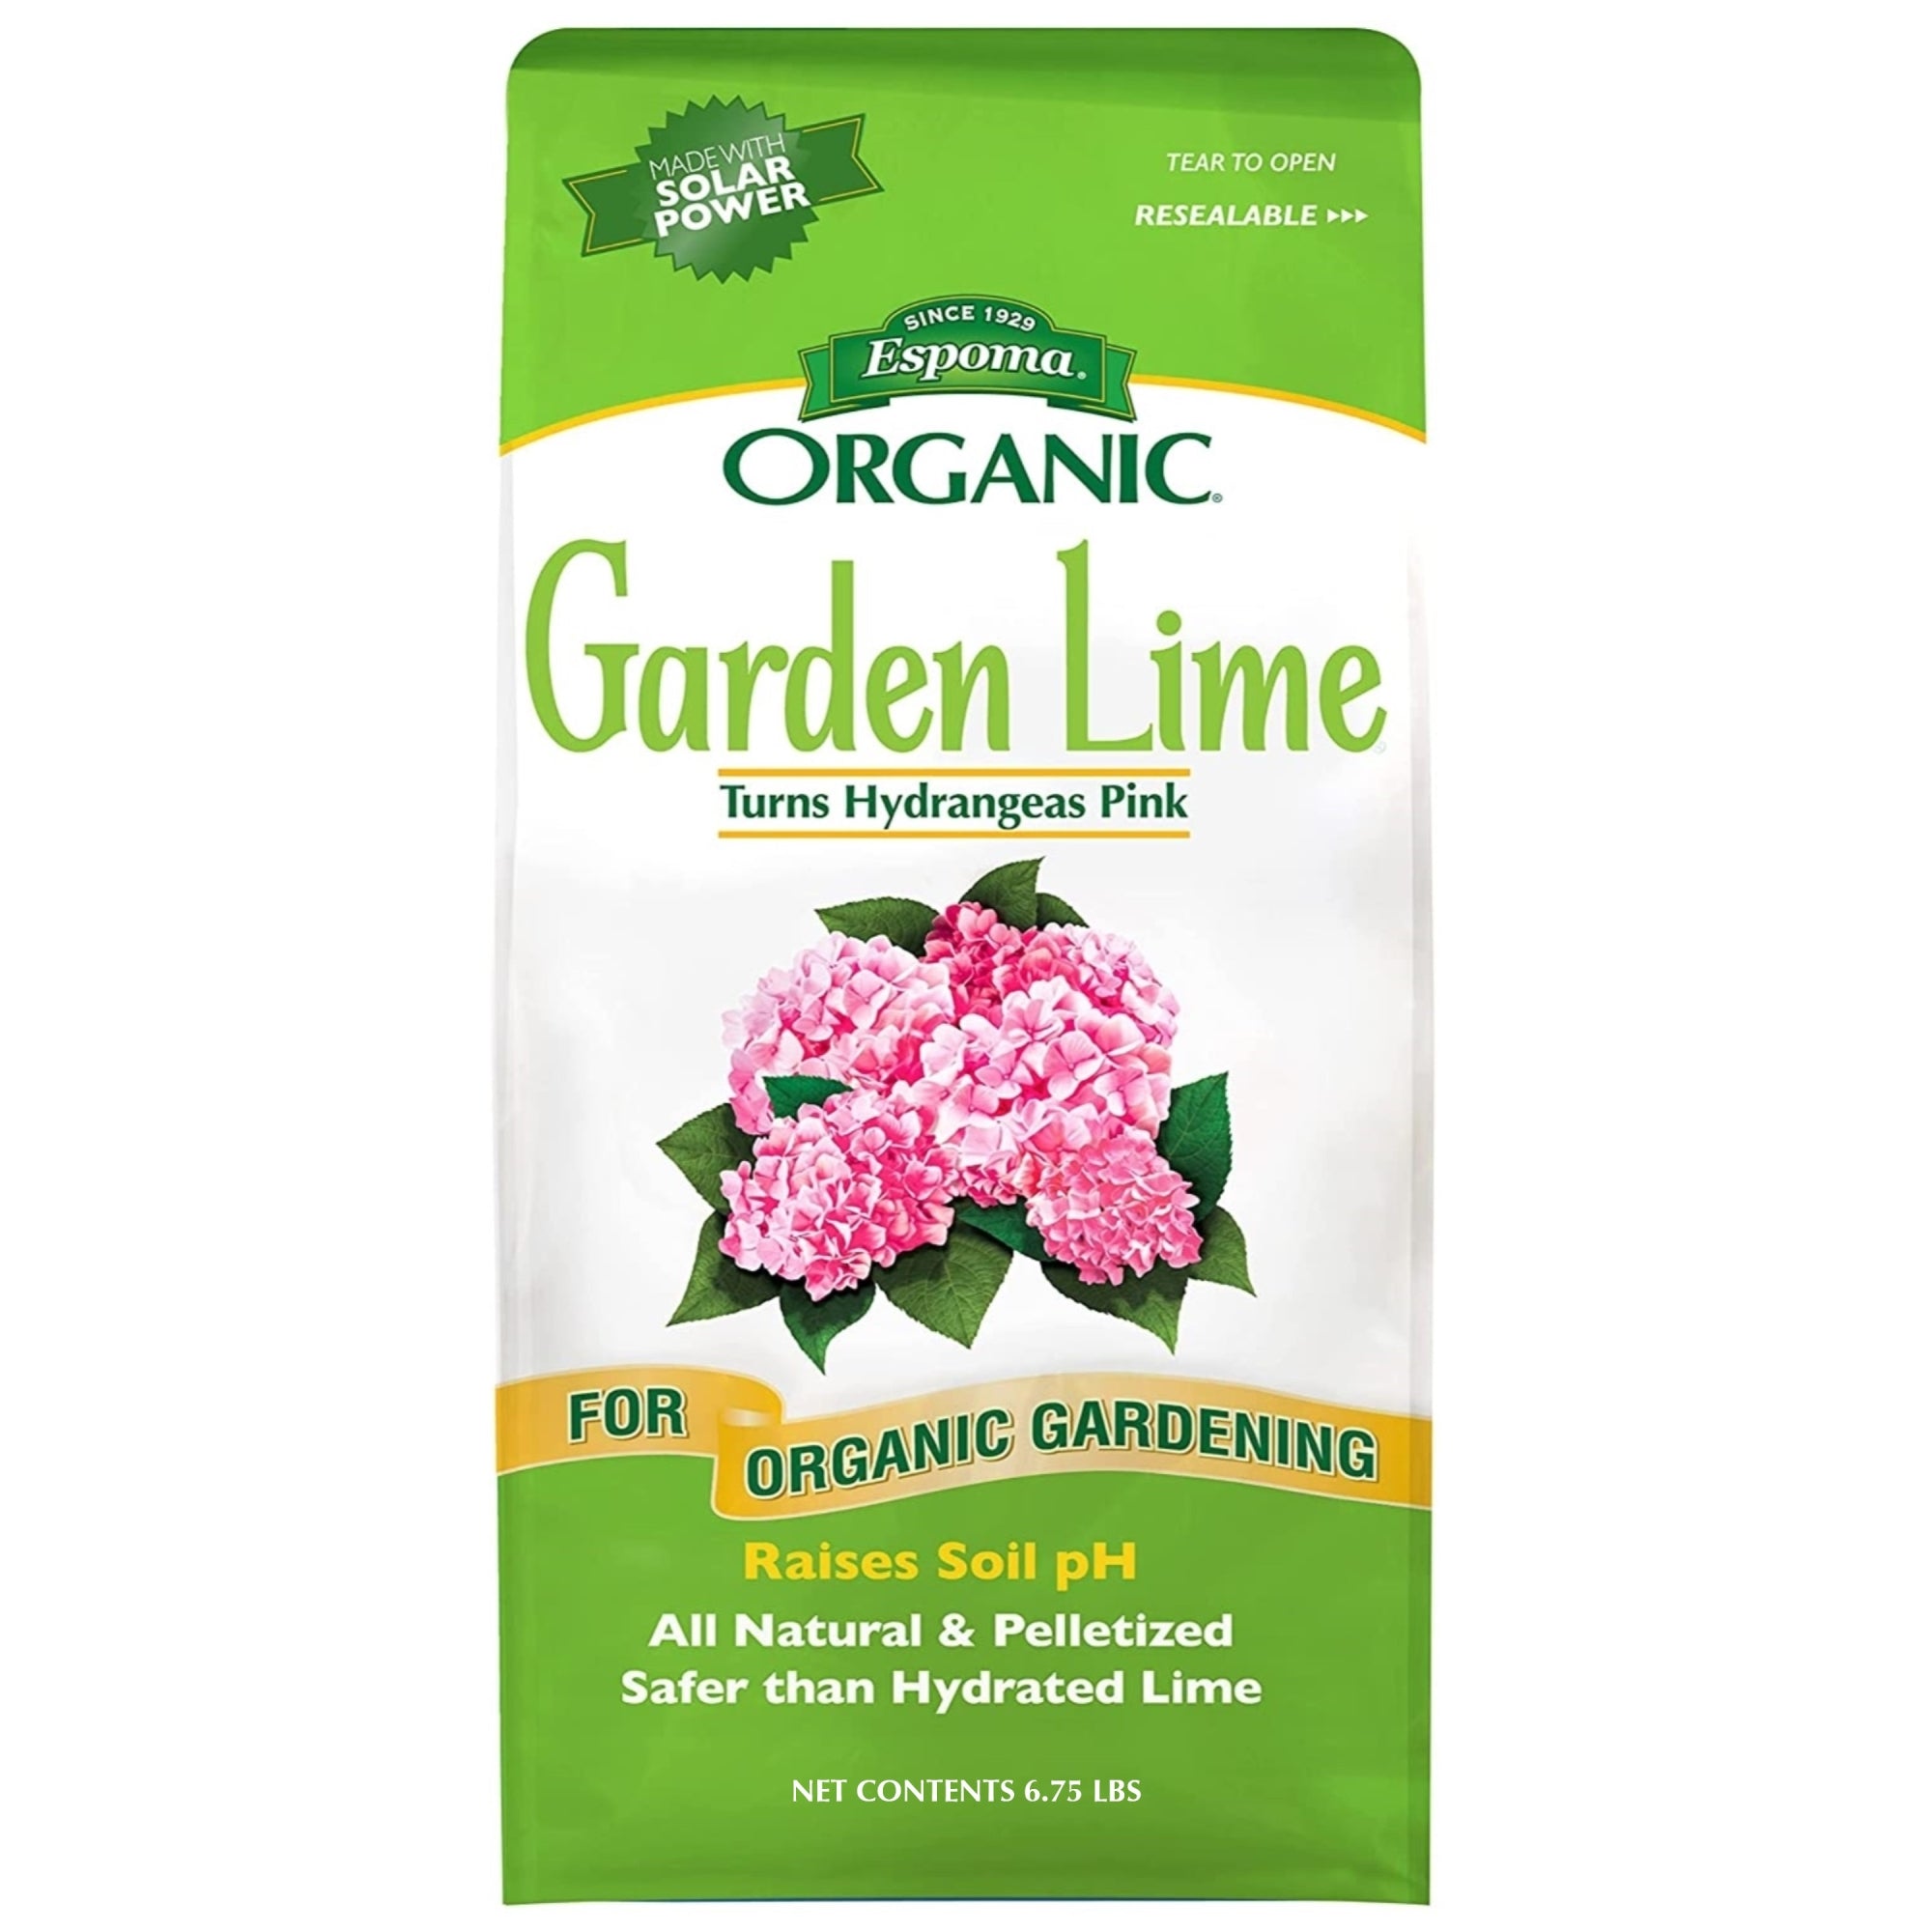 Espoma Organic Garden Lime Soil Enhancer for Organic Gardening, Raises Soil pH and Turns Hydrangeas Pink, All Natural & Pelletized